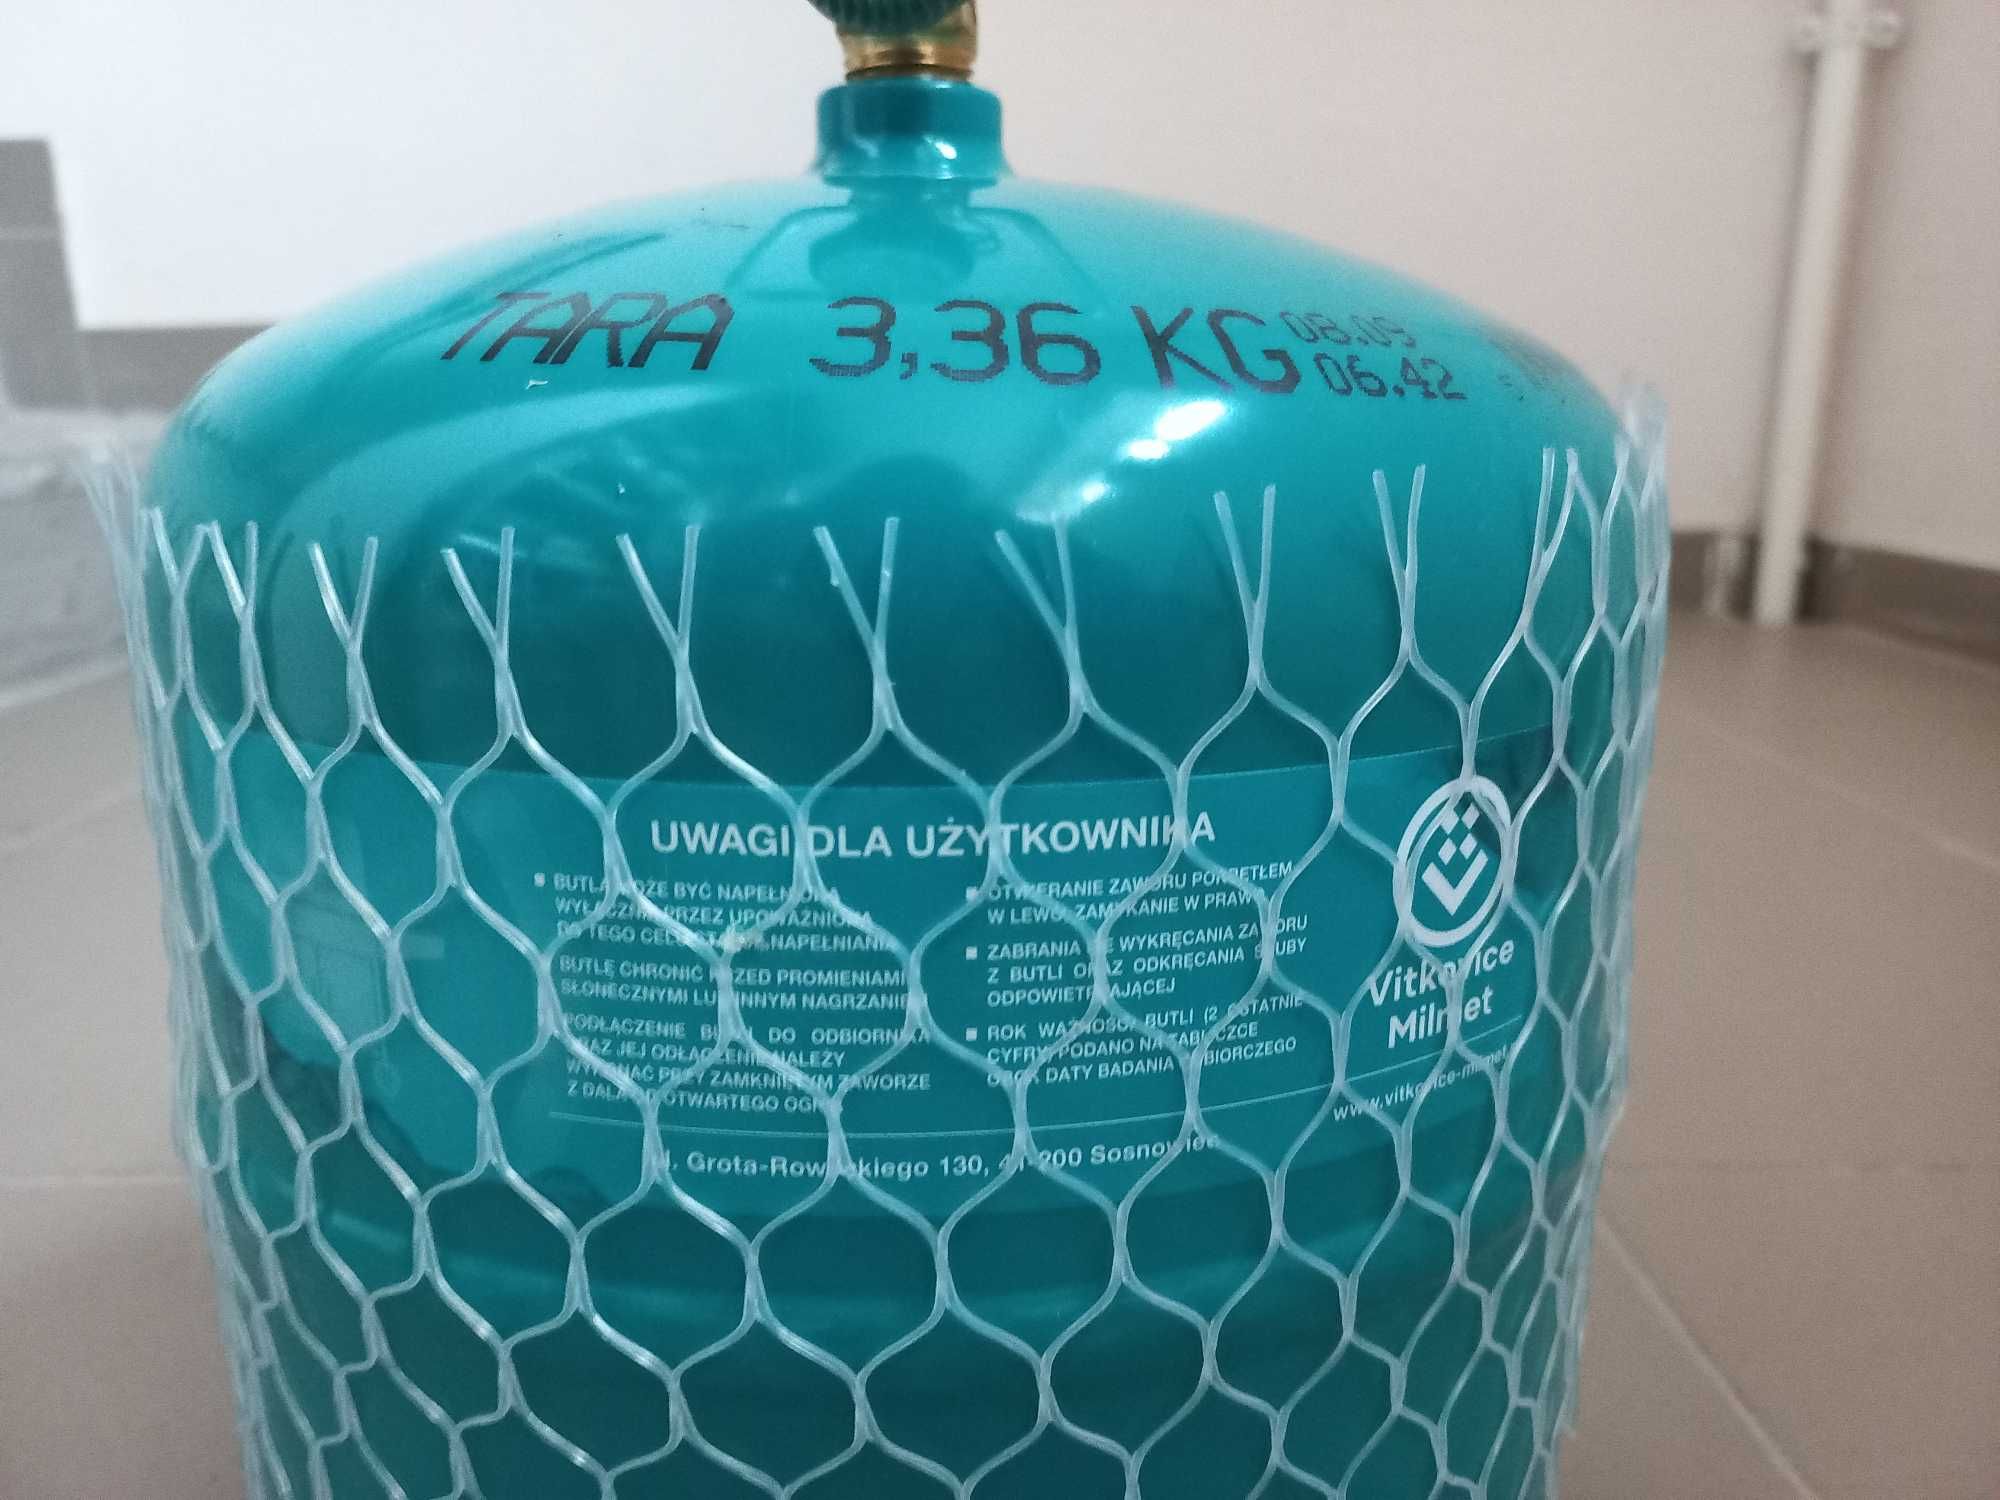 Газовий балон туристичний 3.36 кг / 7.2 л.  з пальником. Польща.